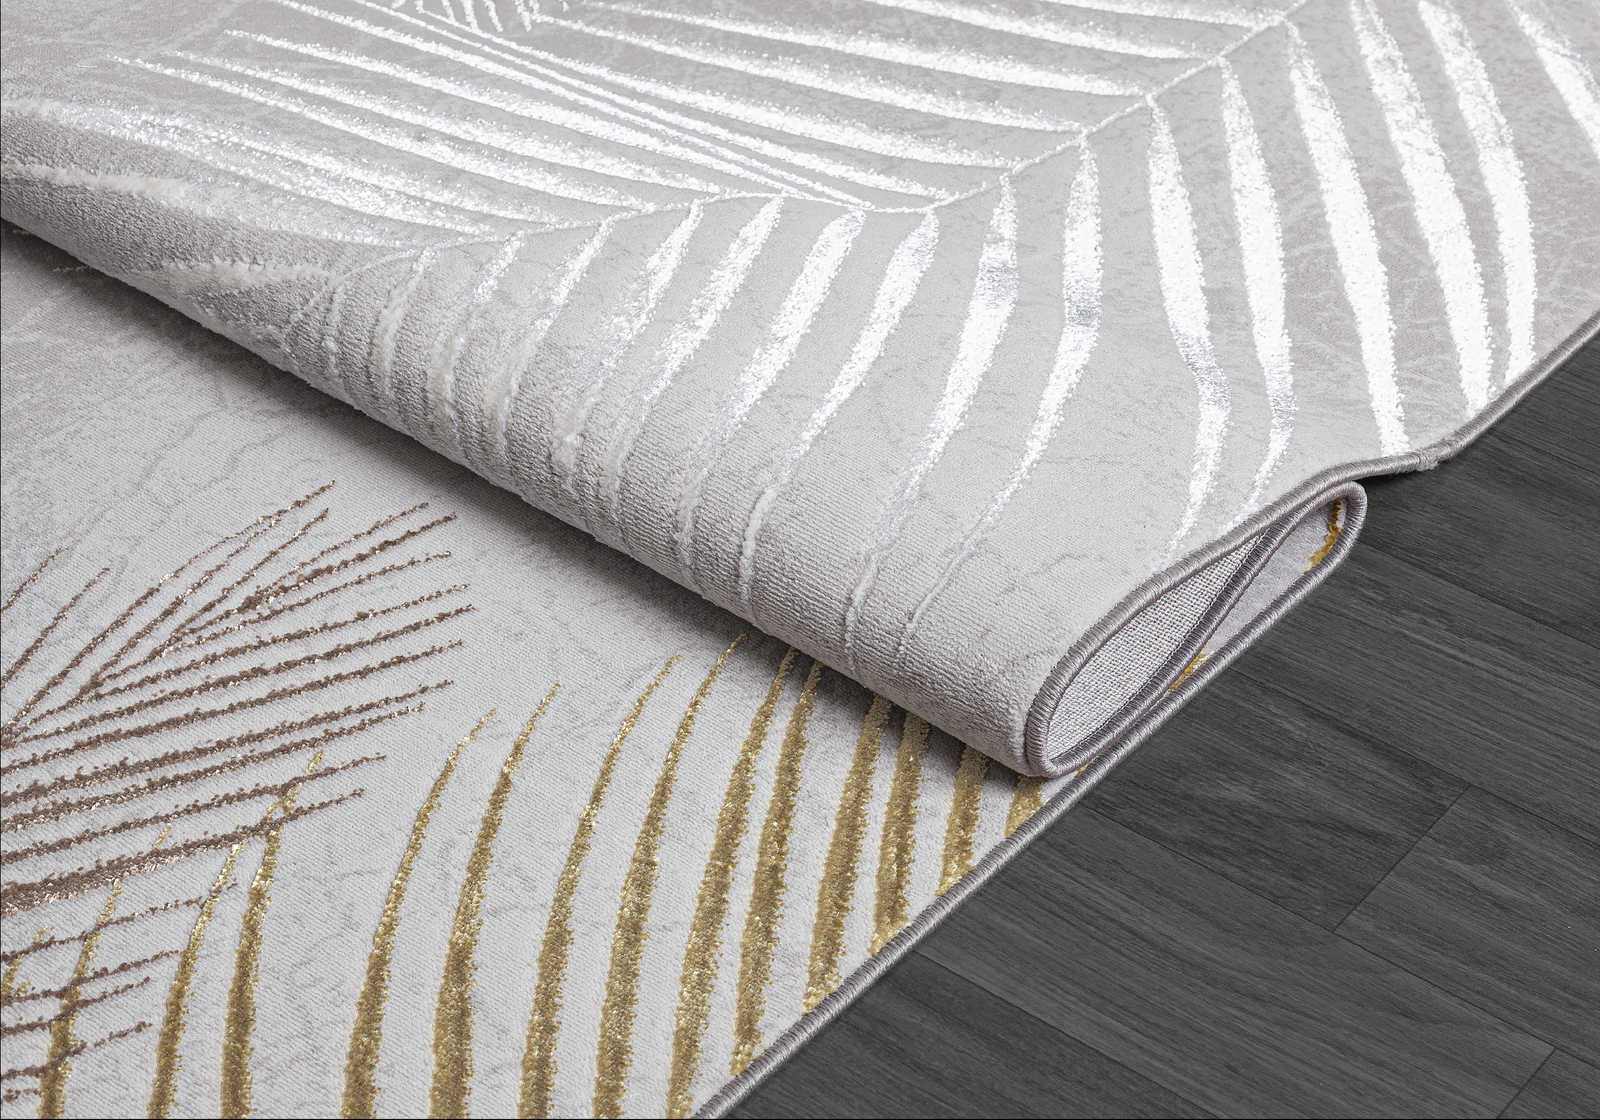             Knuffelzacht hoogpolig tapijt in grijs als loper - 340 x 240 cm
        